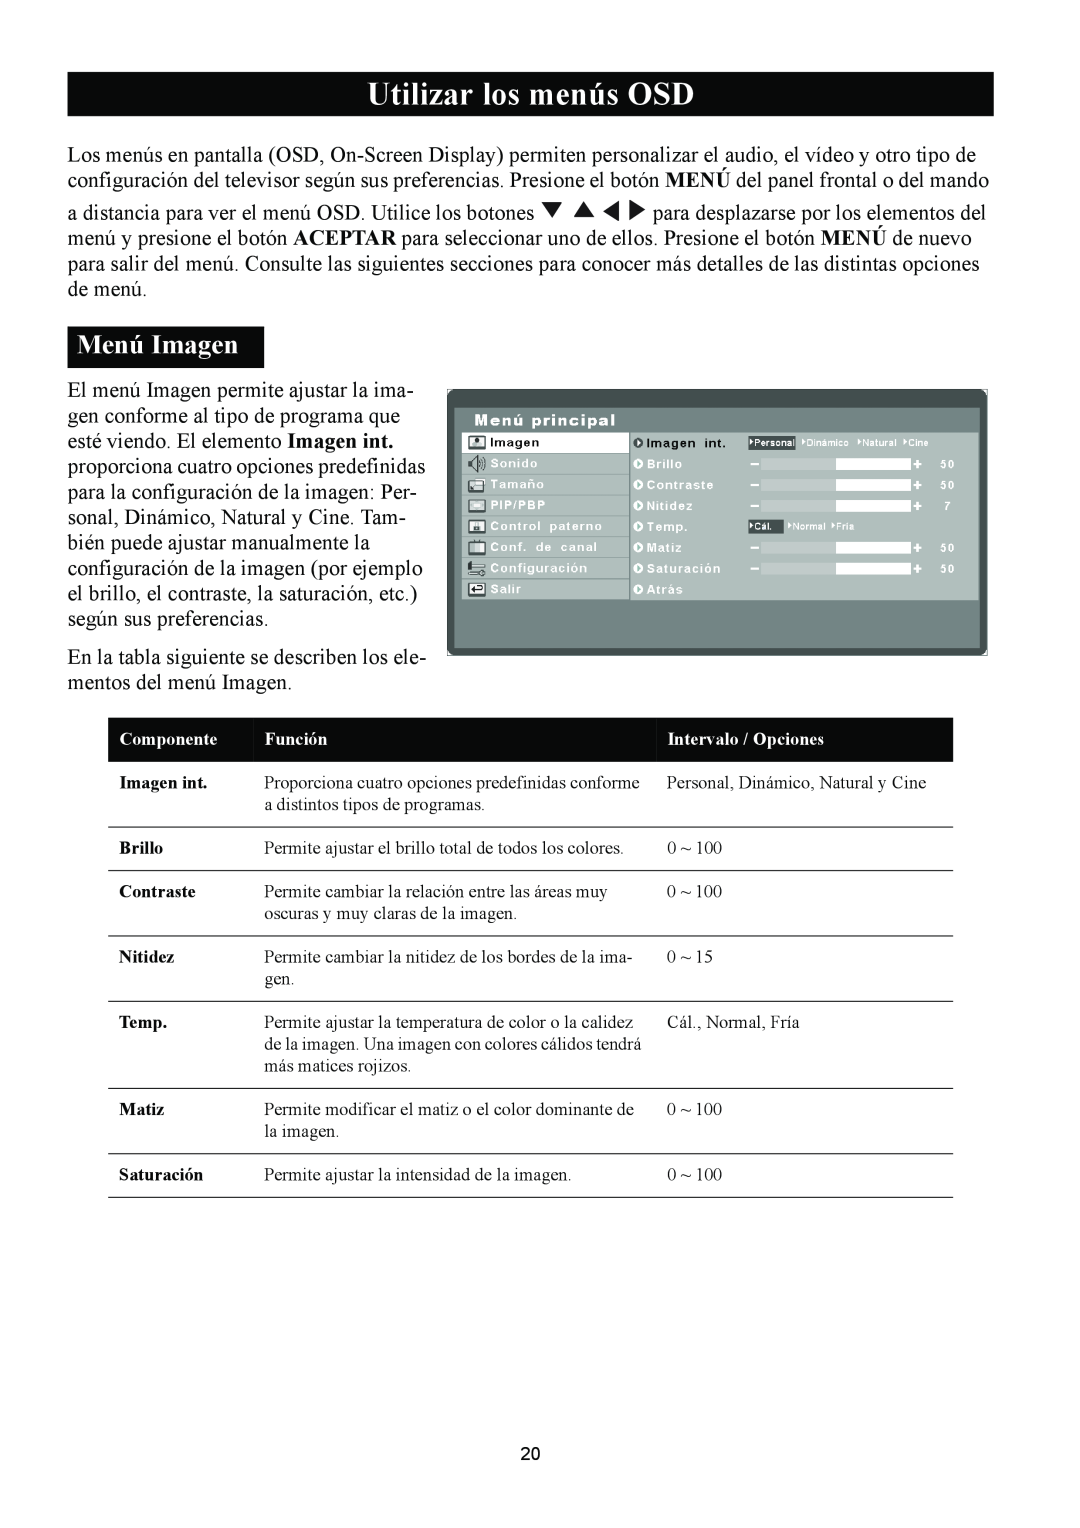 Magnavox 50ML8105D/17 owner manual Utilizar los menús OSD, Menú Imagen 